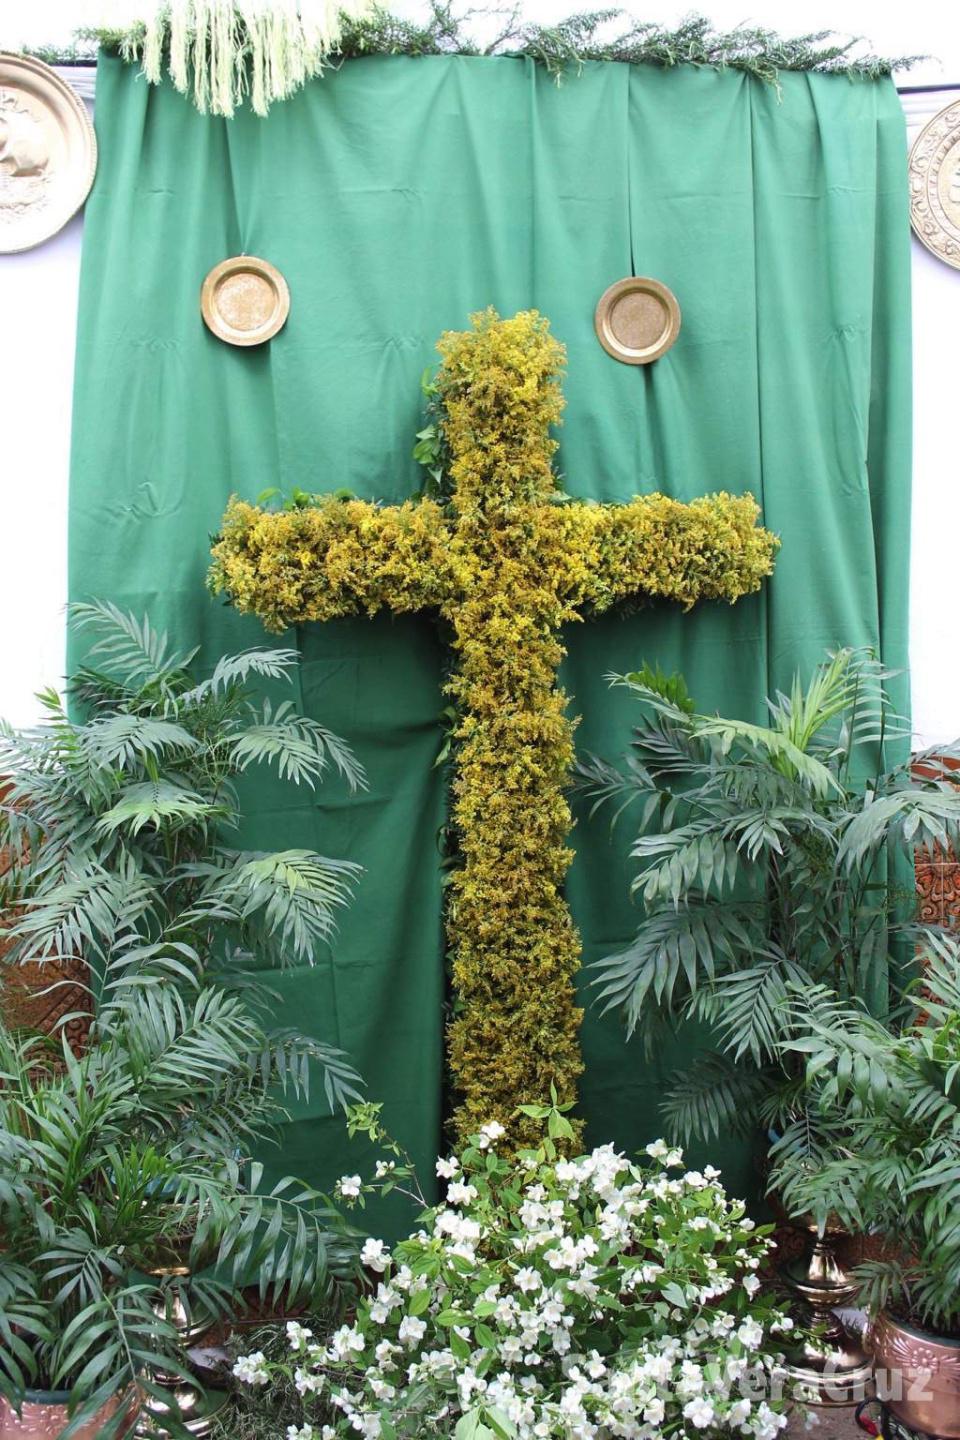 Fiesta de las Cruces de Mayo